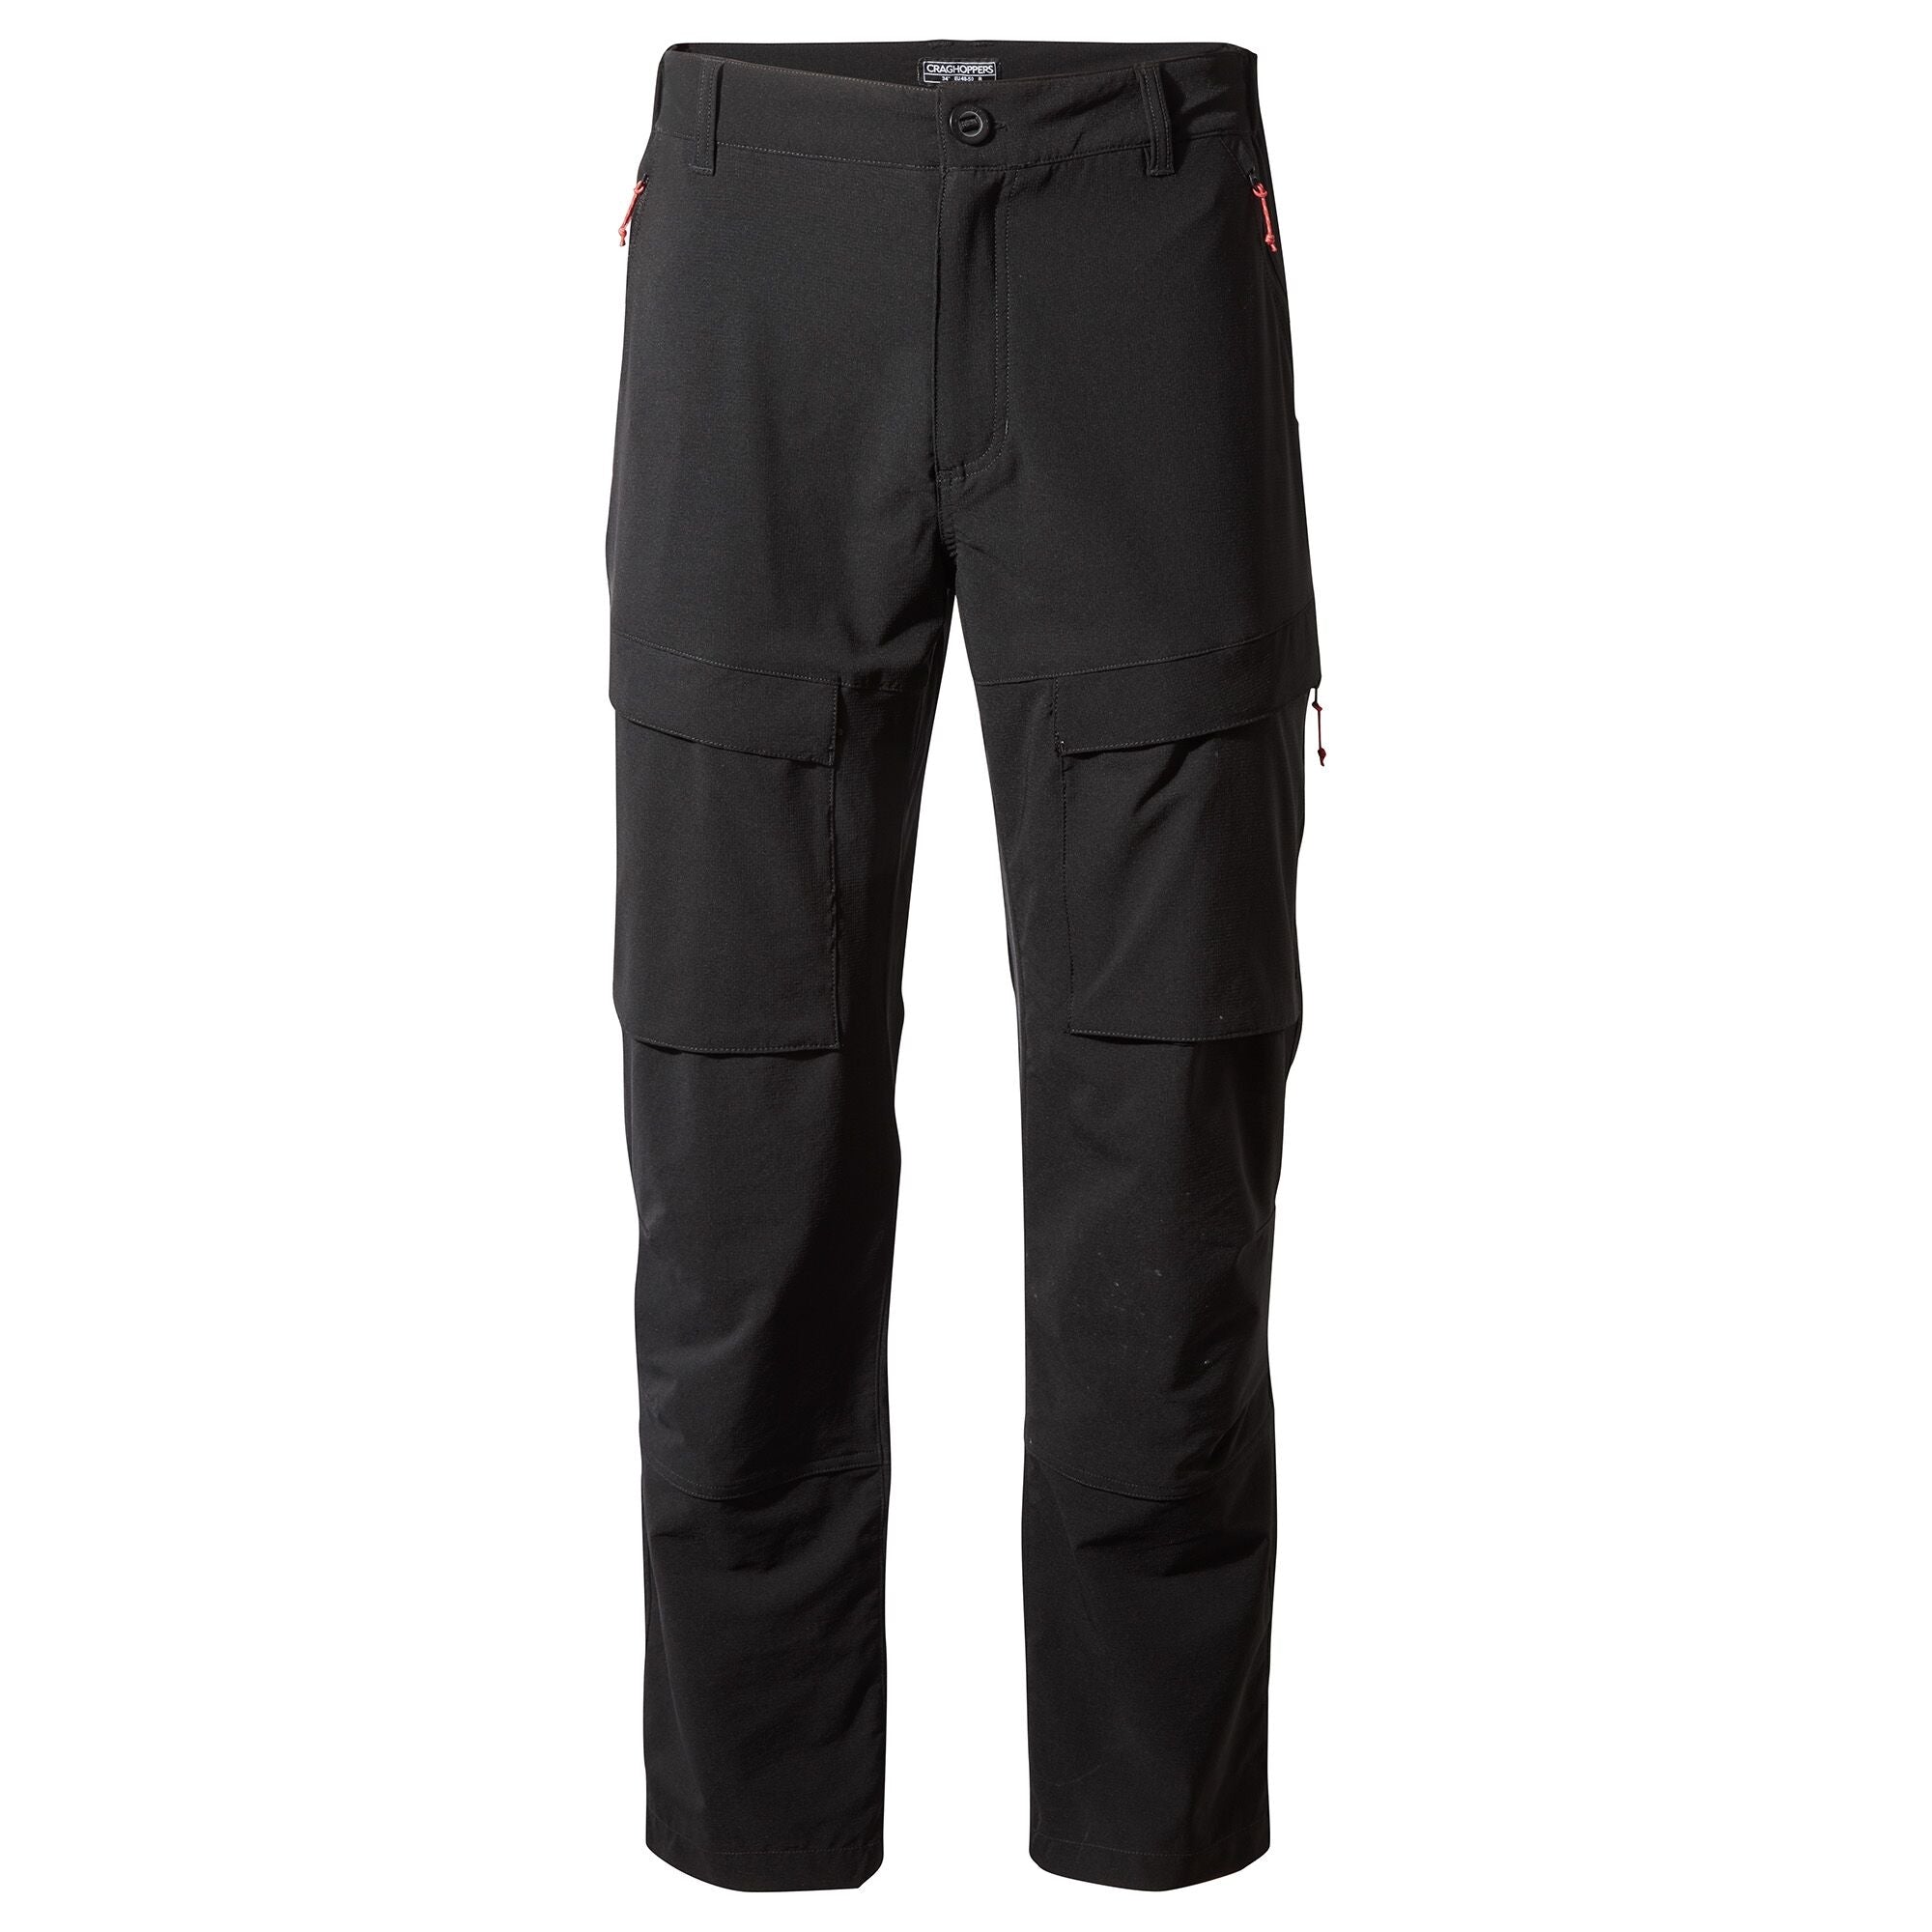 Men's Kiwi Pro Expedition Pants | Black/Black